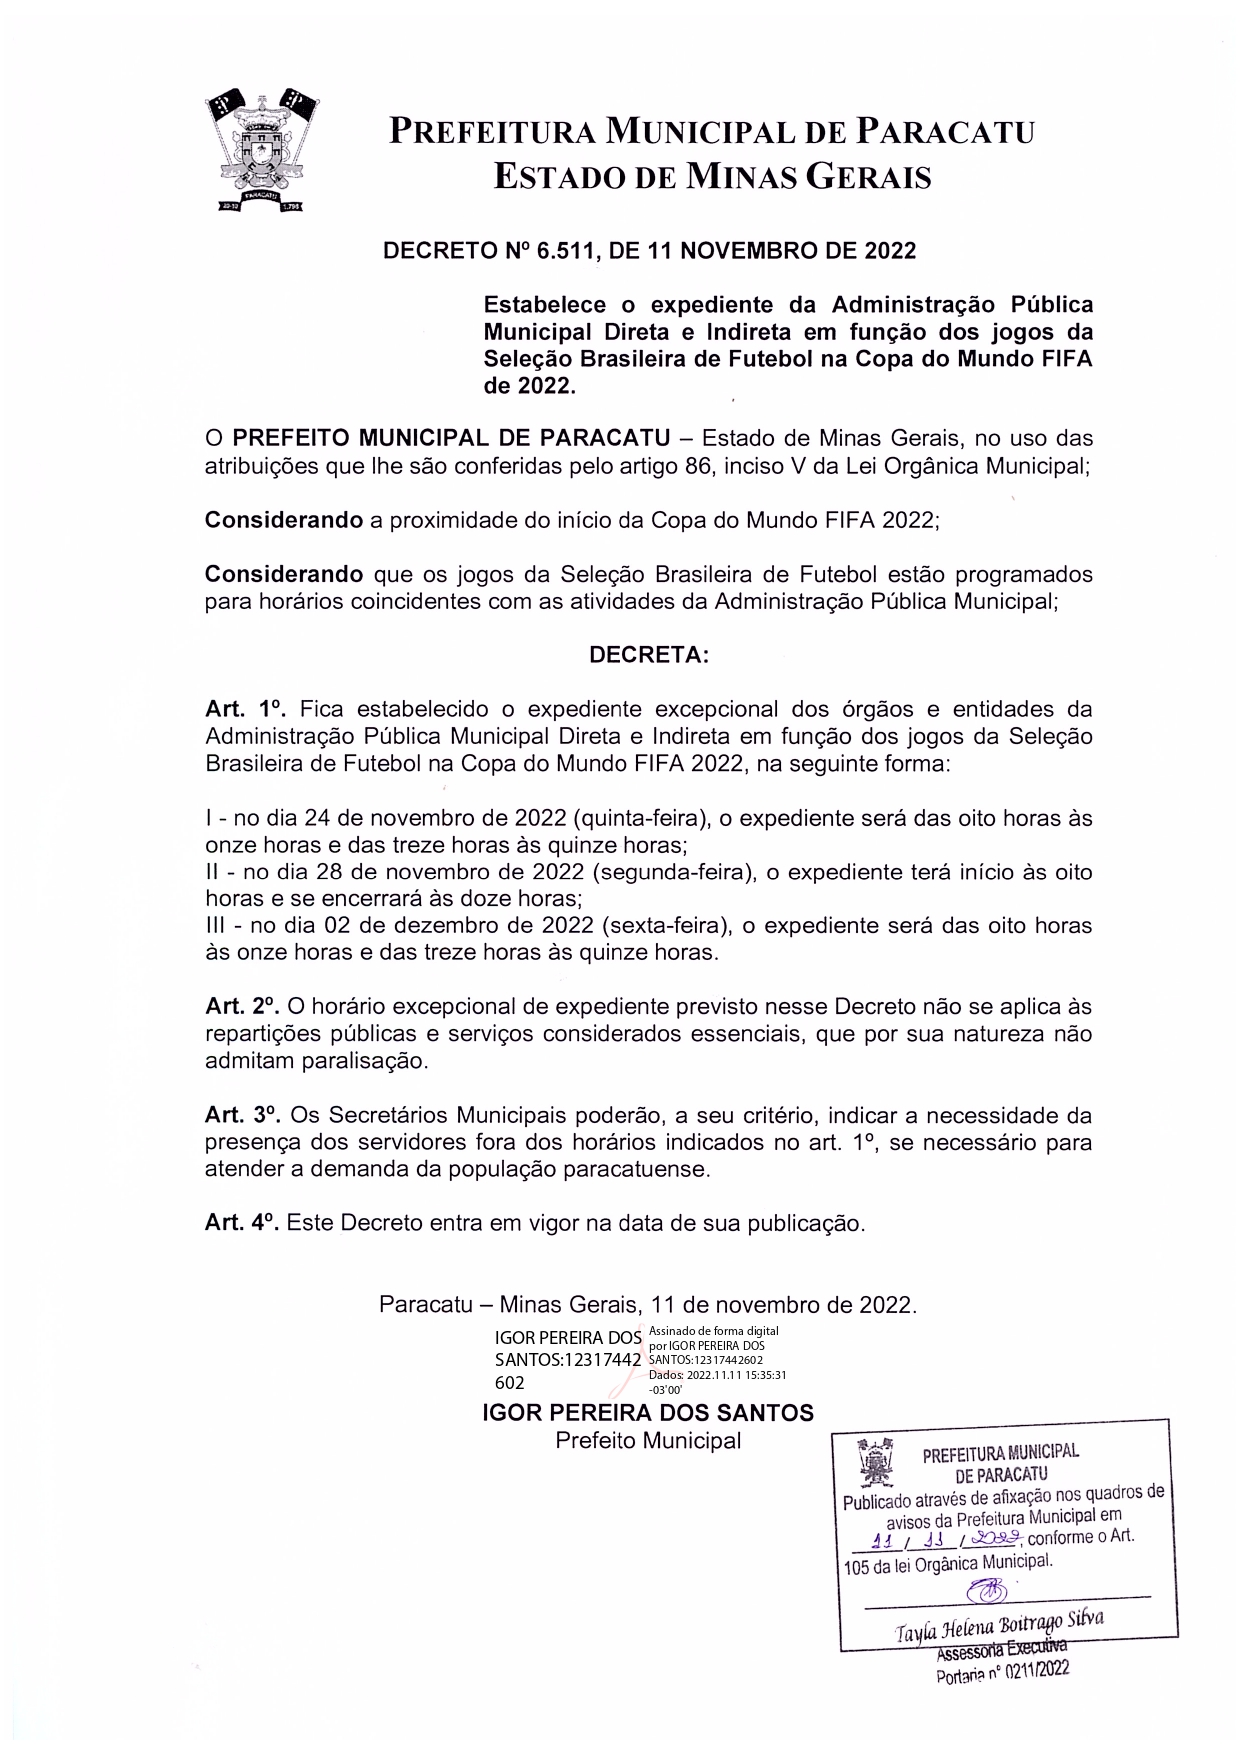 Decreto nº 6.511, de 11 de novembro de 2022 - Estabelece o expediente dos órgãos e entidades da Administração Pública em razão dos jogos da Seleção Brasileira na Copa do Mundo de 2022_page-0001